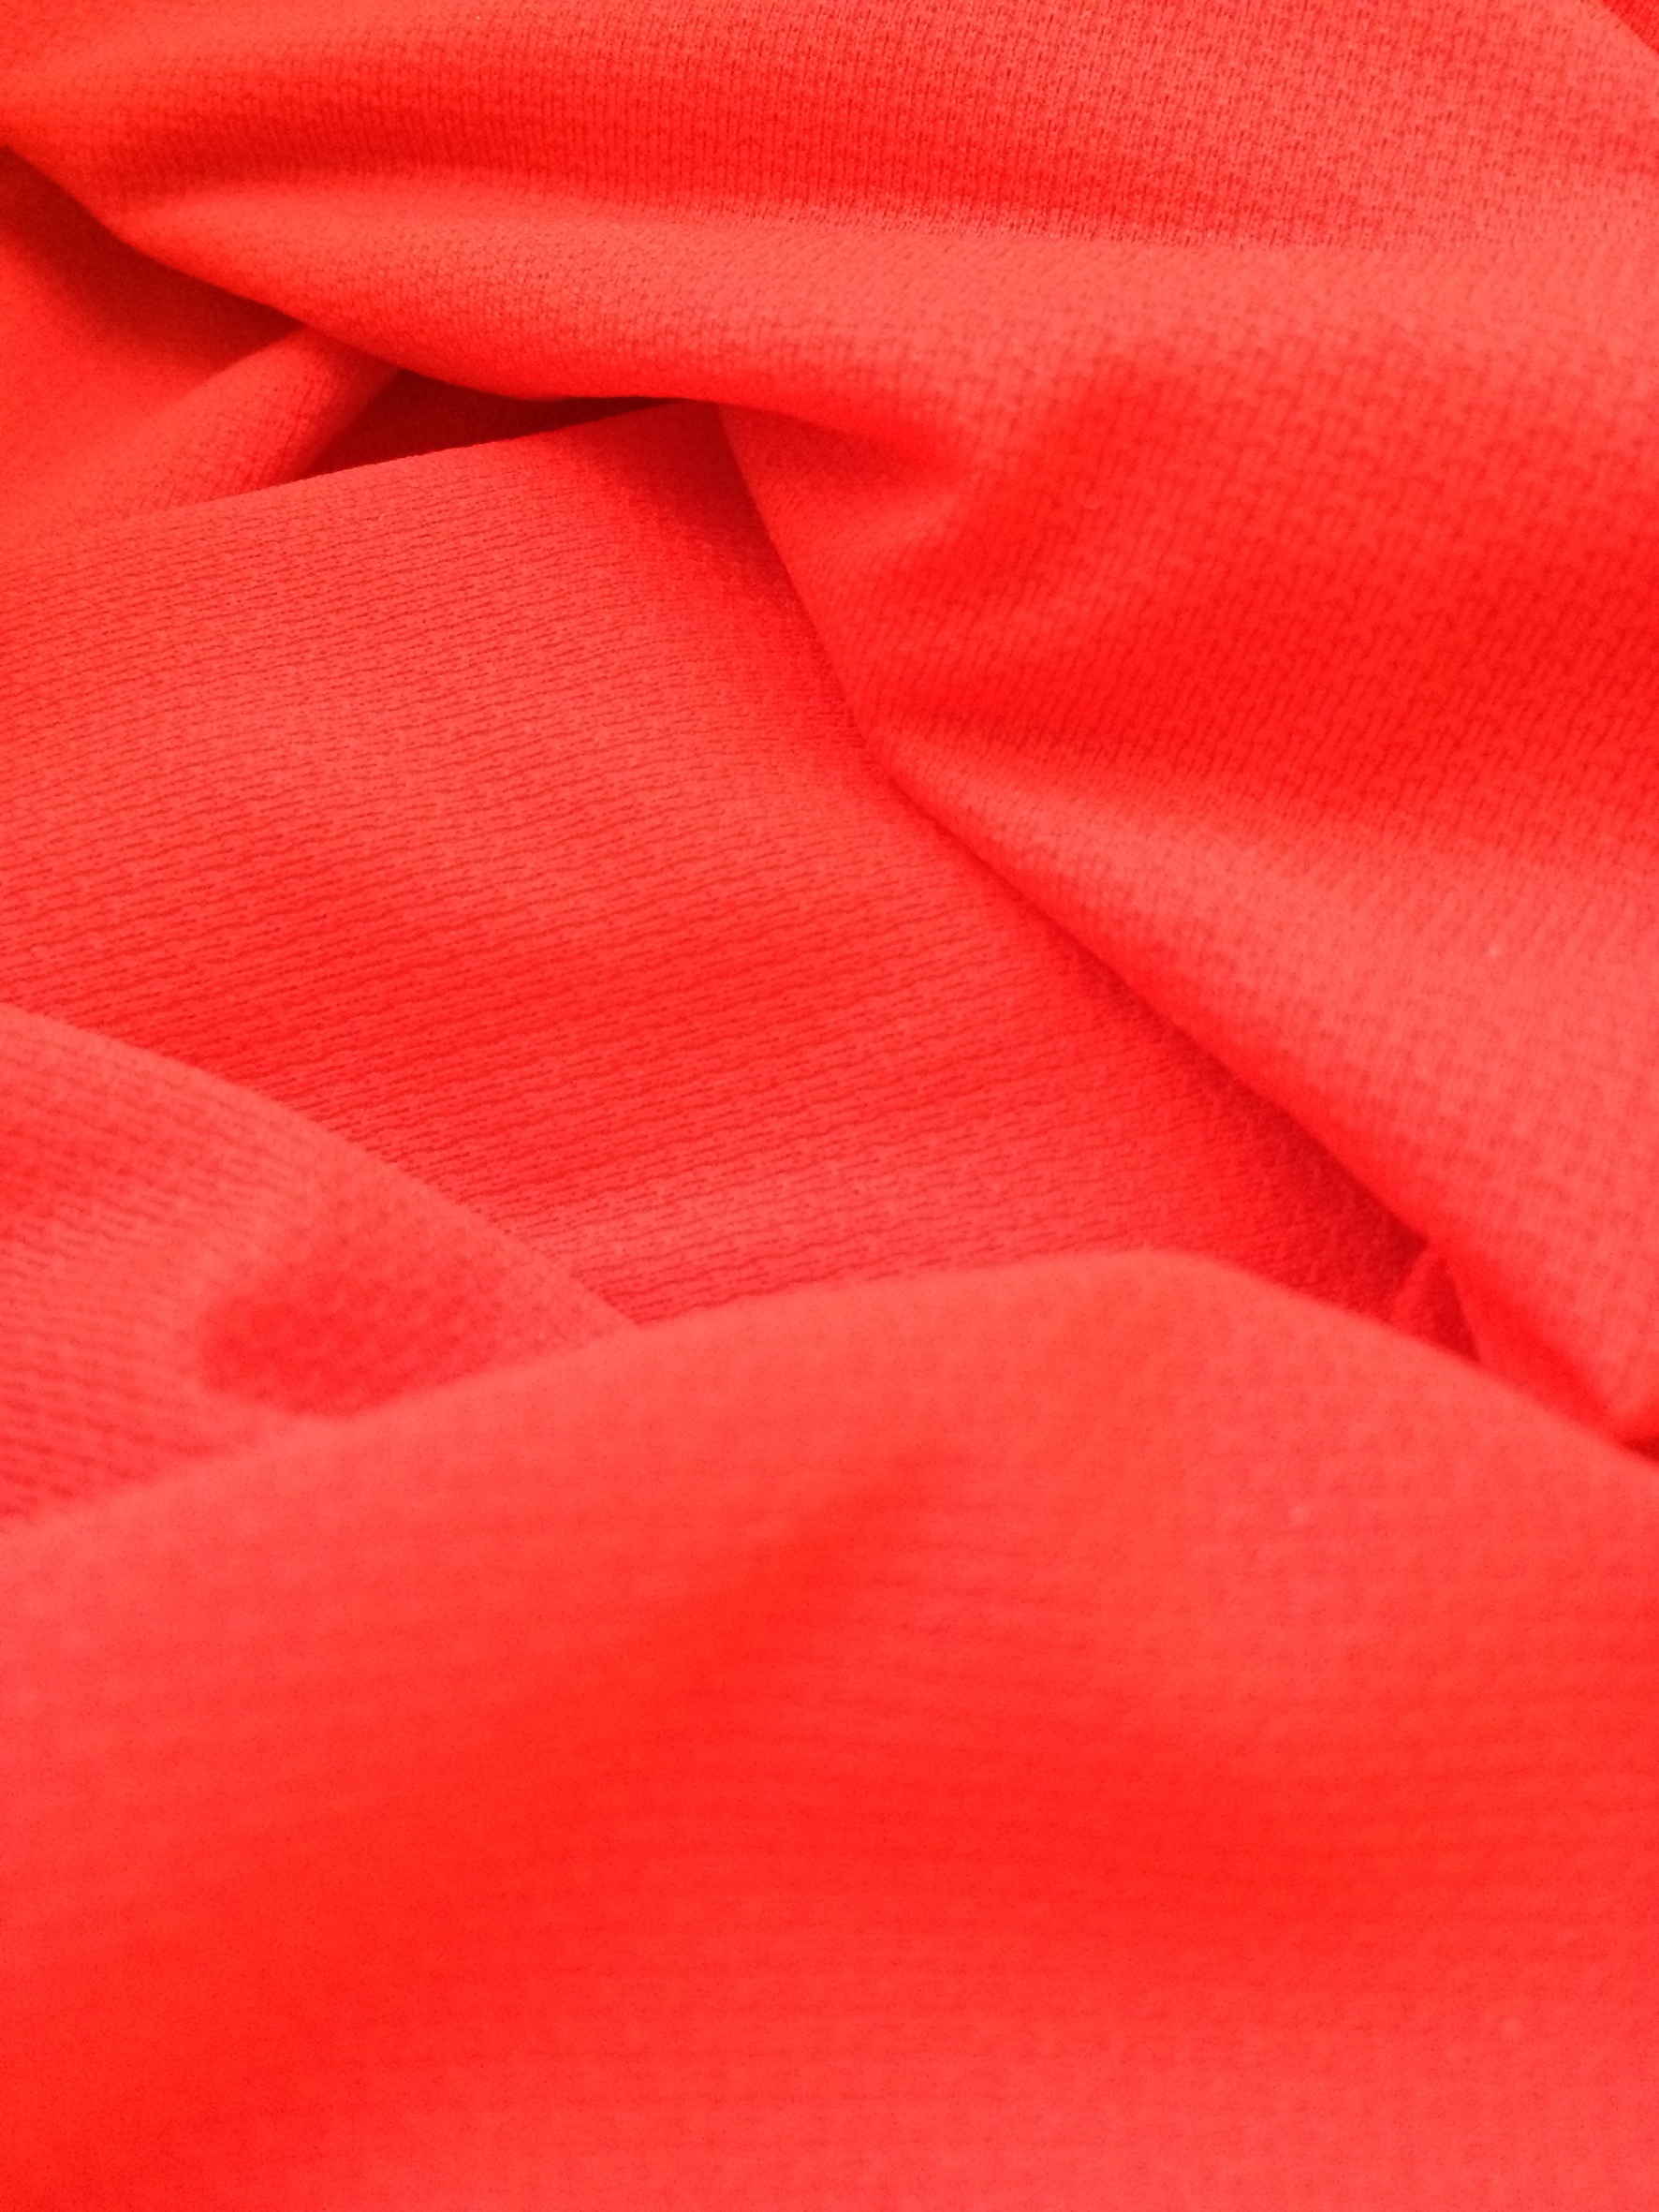 Sofileta fabric with EVO by Fulgar. © Fulgar/Sofileta 